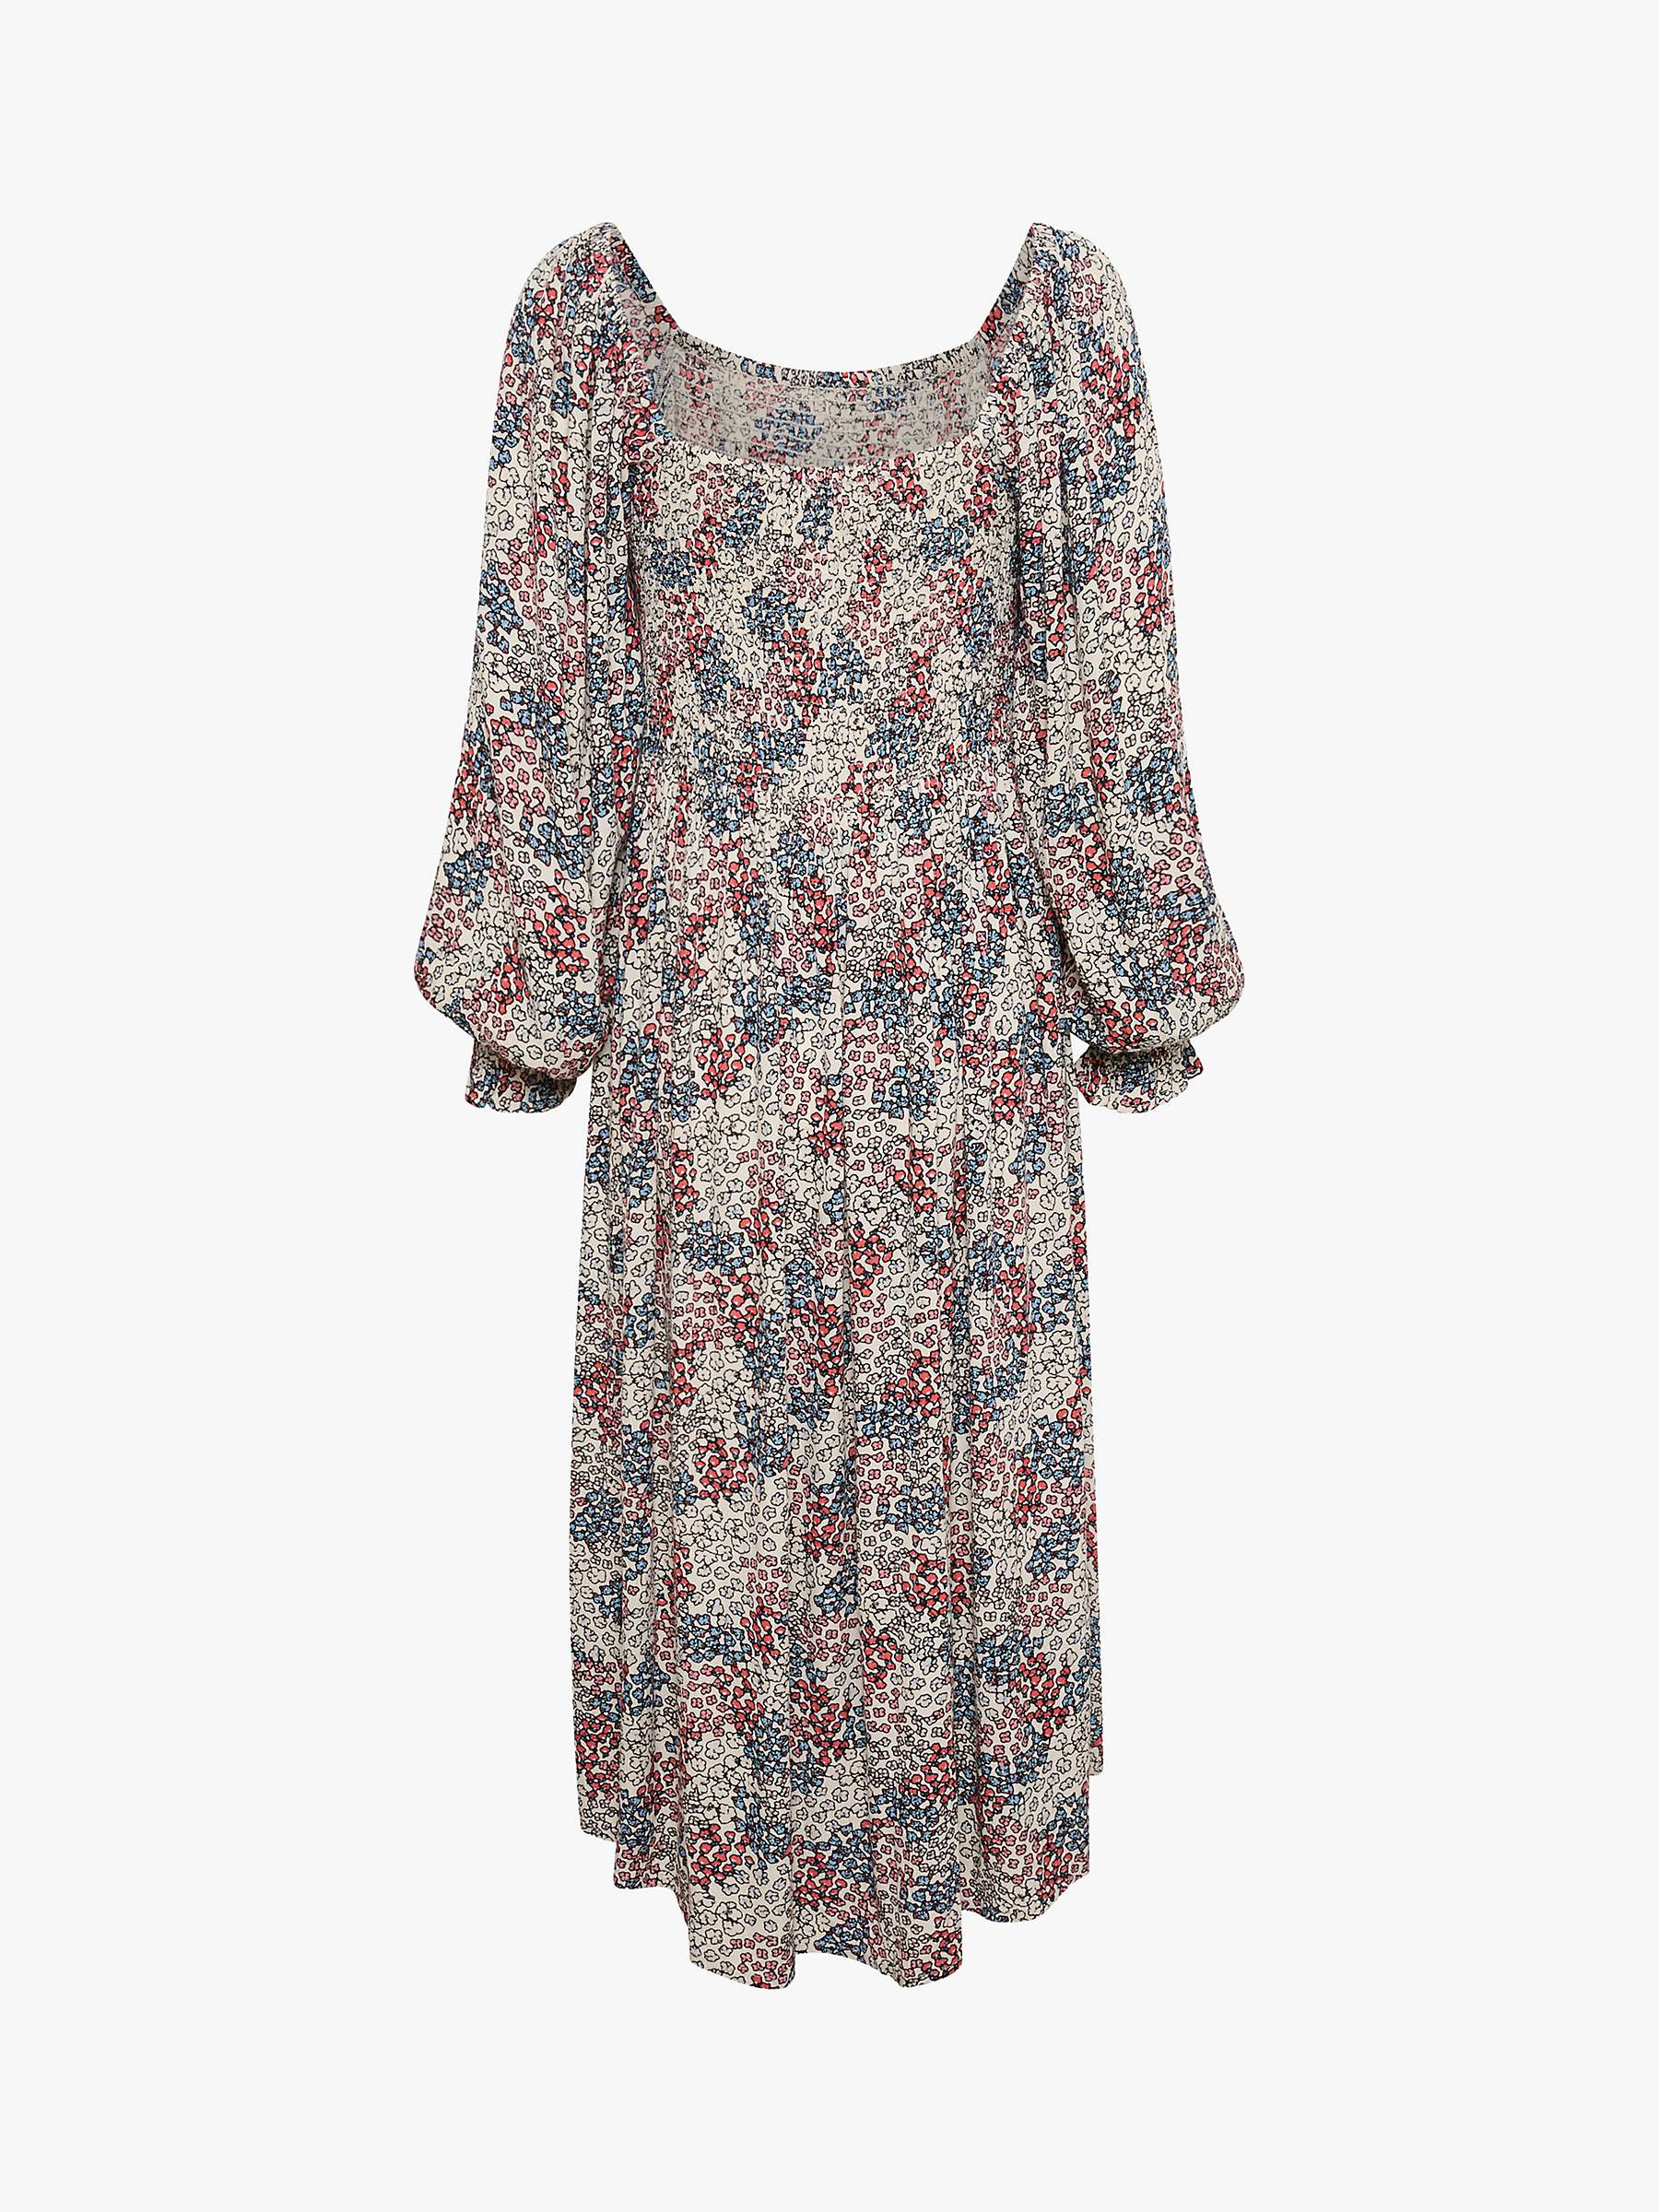 Buy Soaked In Luxury Zaya Meadow Print Smock Dress, Multi Online at johnlewis.com